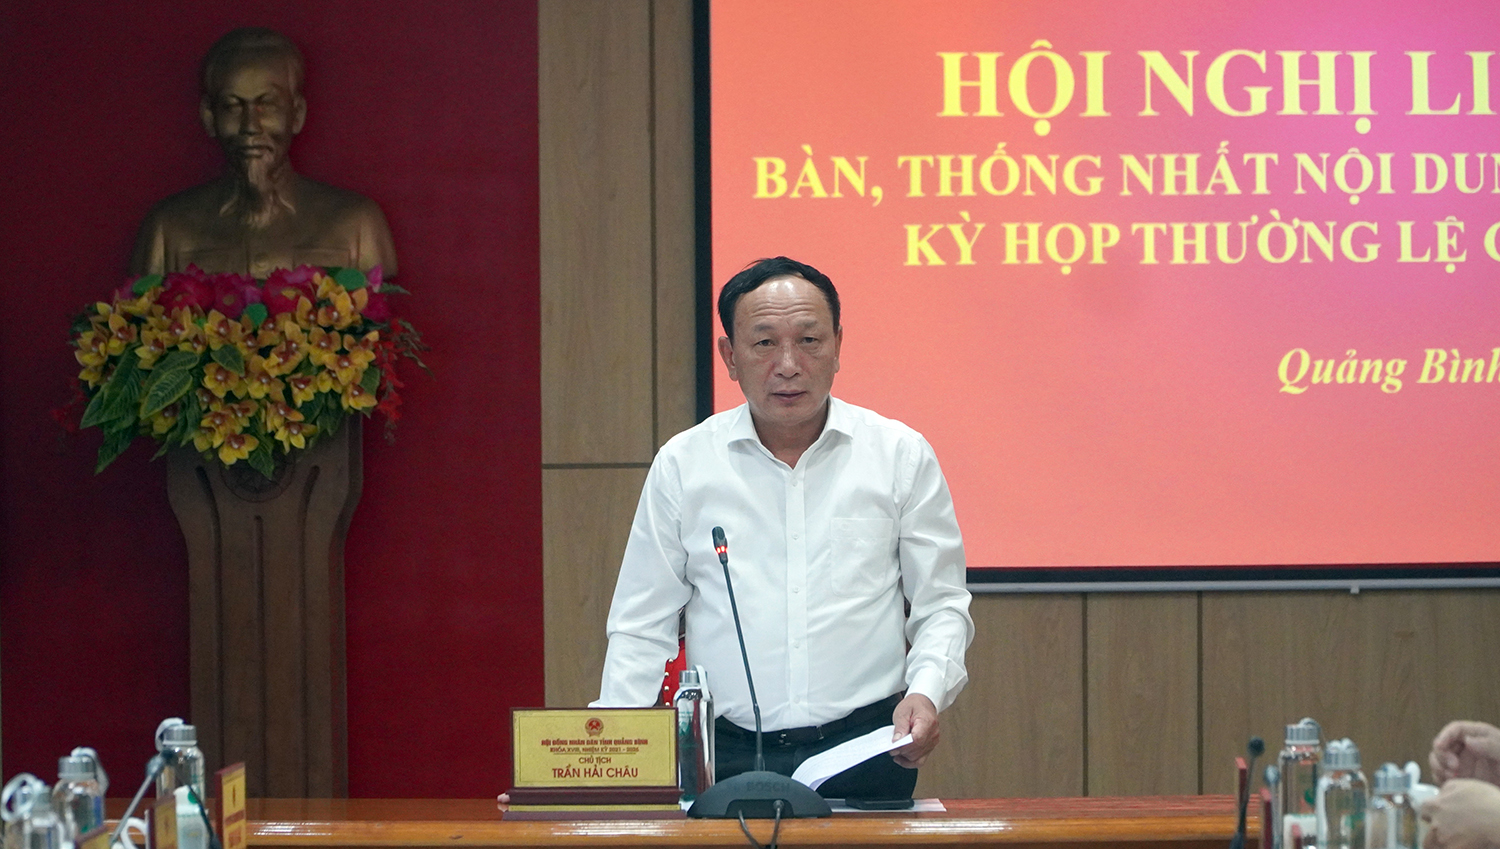 Đồng chí Phó Bí thư Thường trực Tỉnh ủy, Chủ tịch HĐND tỉnh Trần Hải Châu phát biểu kết luận hội nghị